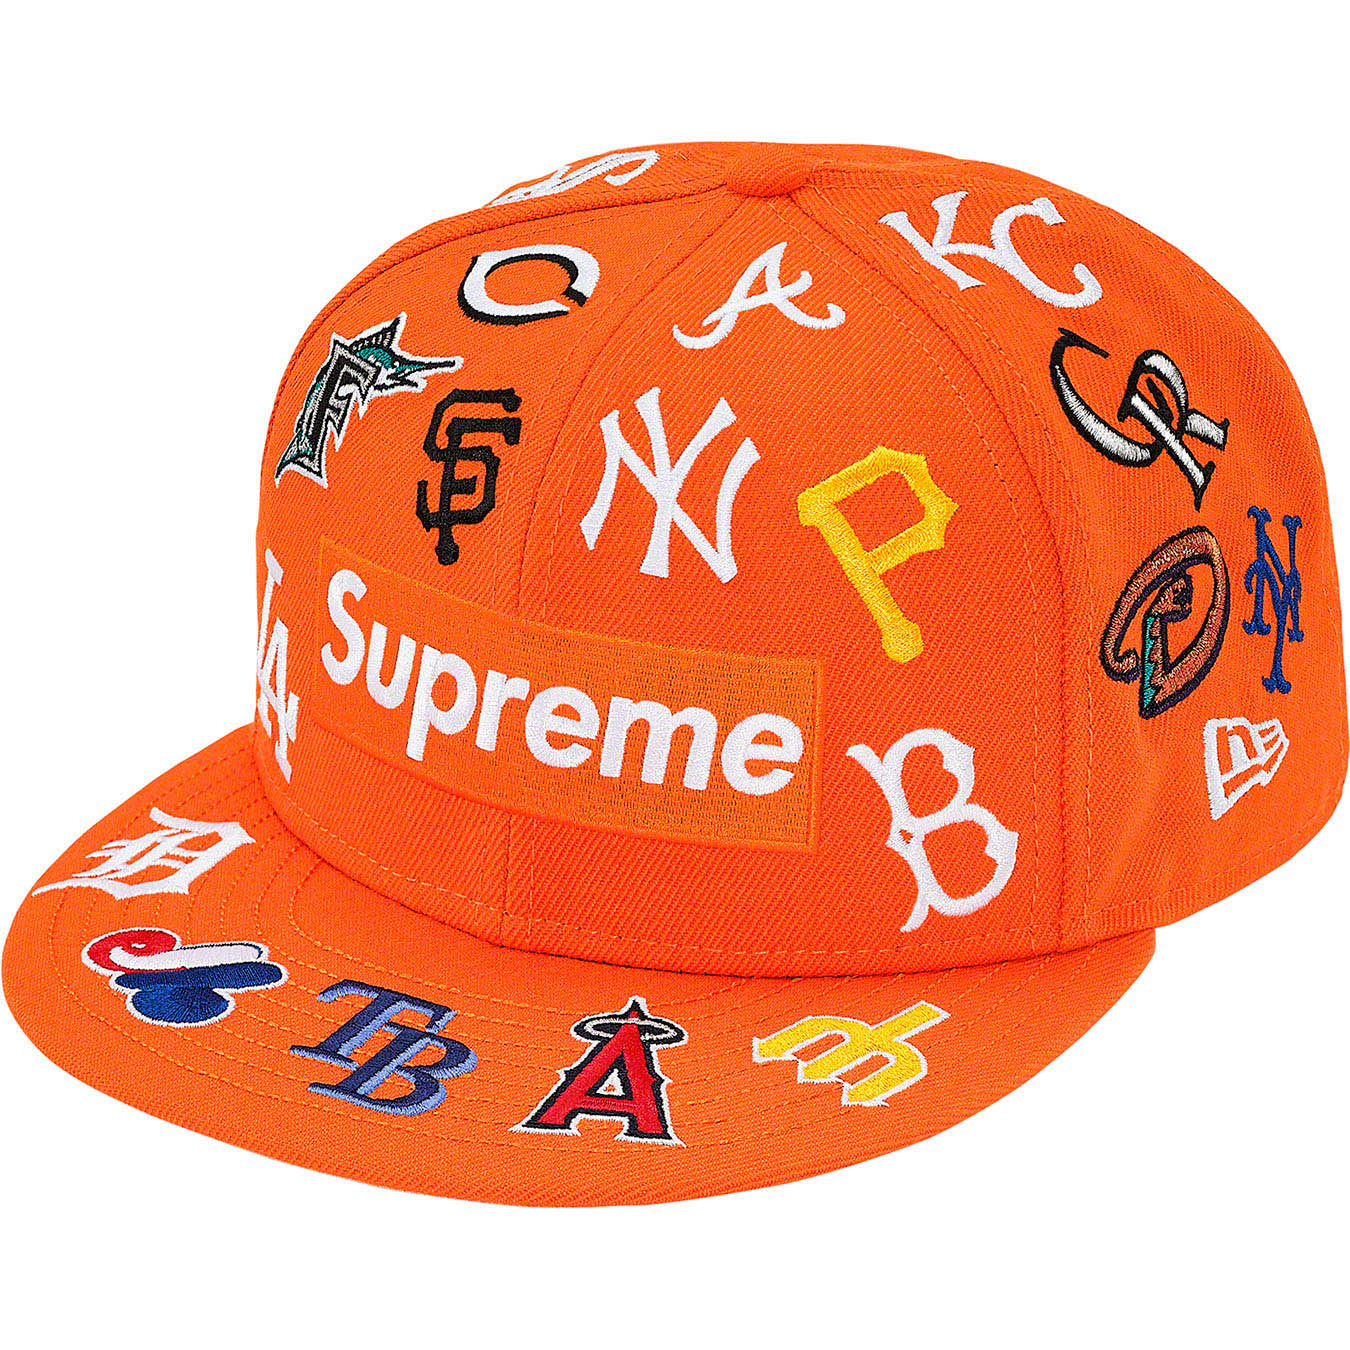 Supreme®/MLB New Era®